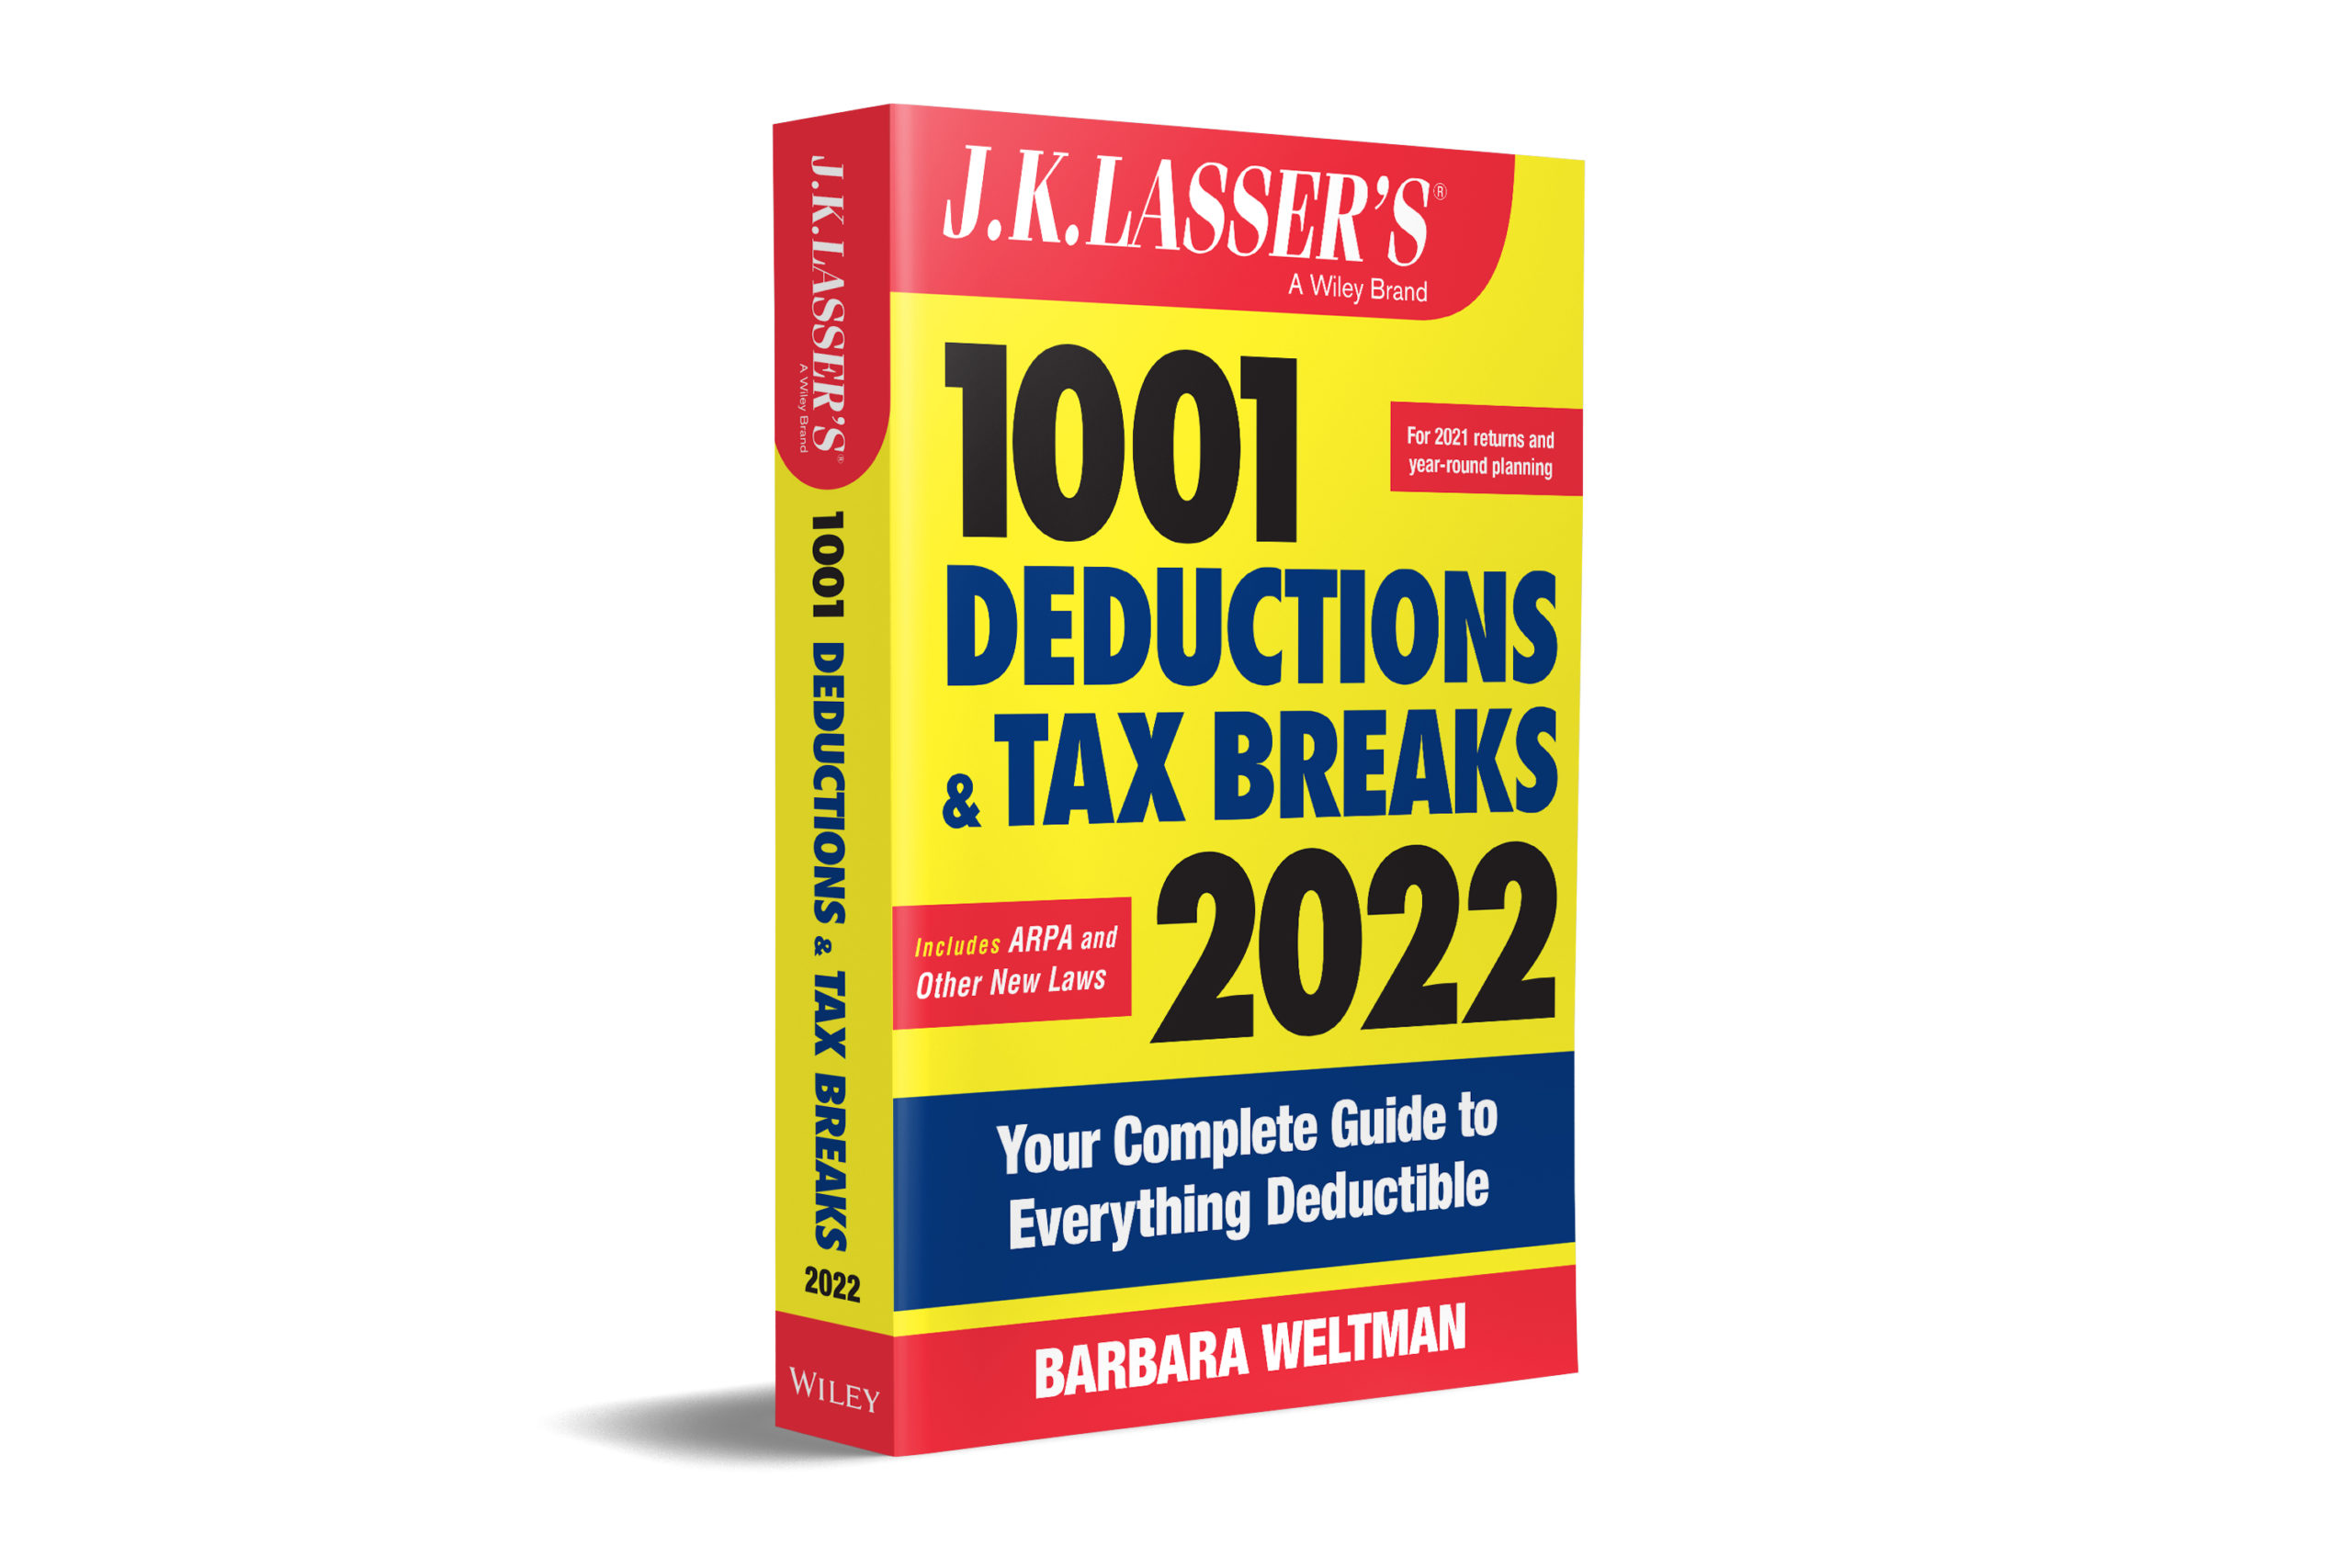 J.K. Lasser's 1001 Deductions & Tax Breaks 2022